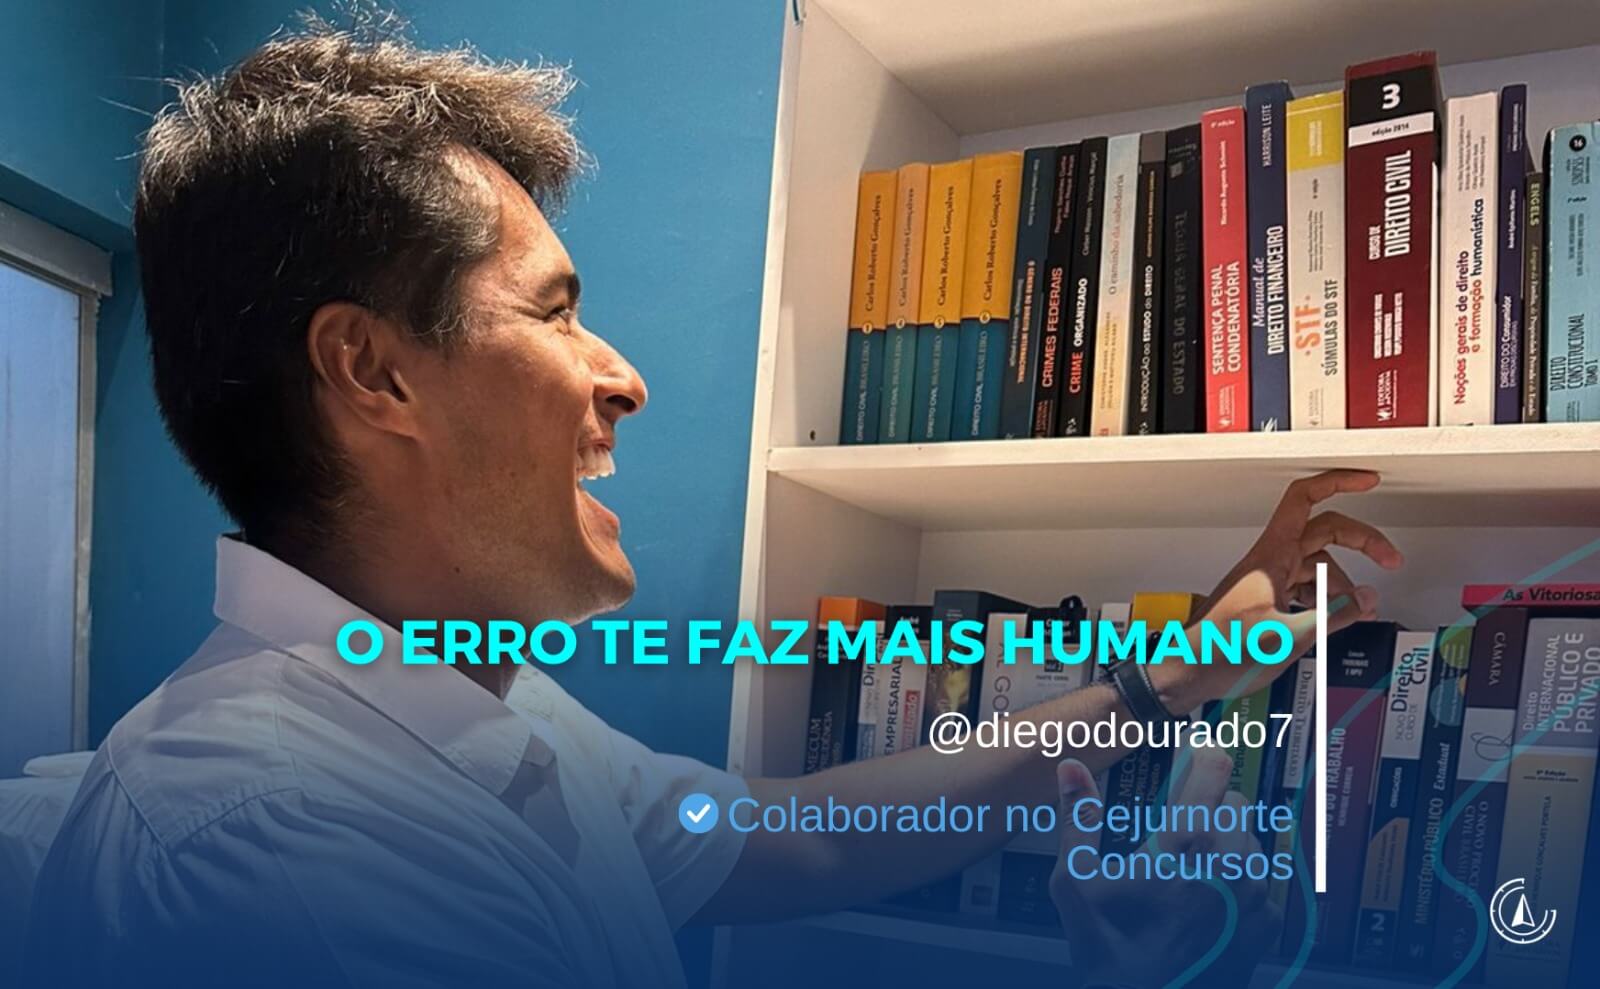 ''O ERRO TE FAZ MAIS HUMANO'' - Por Diego Dourado